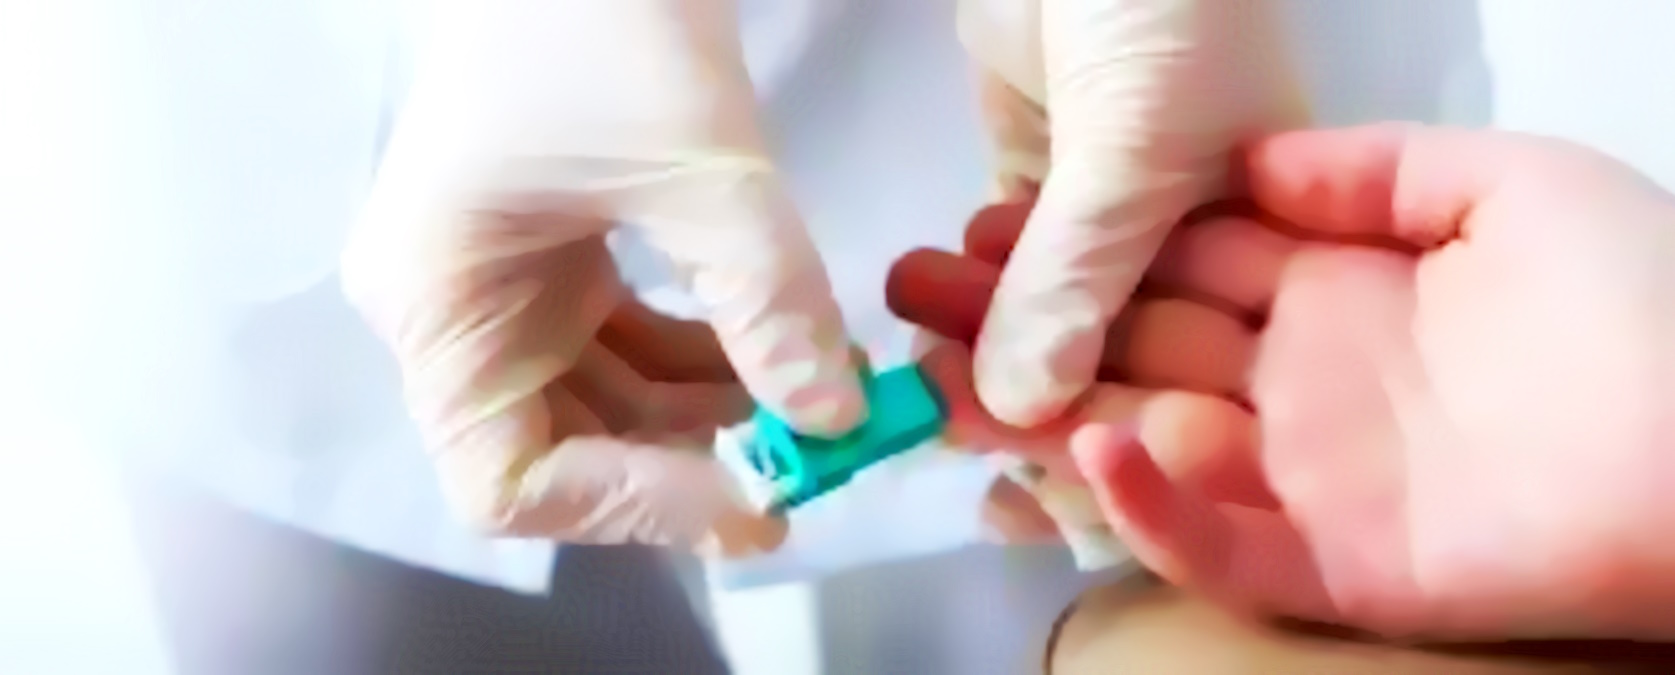 Approvato dal Senato il ddl n. 727 per l'individuazione di diabete e celiachia nella popolazione pediatrica